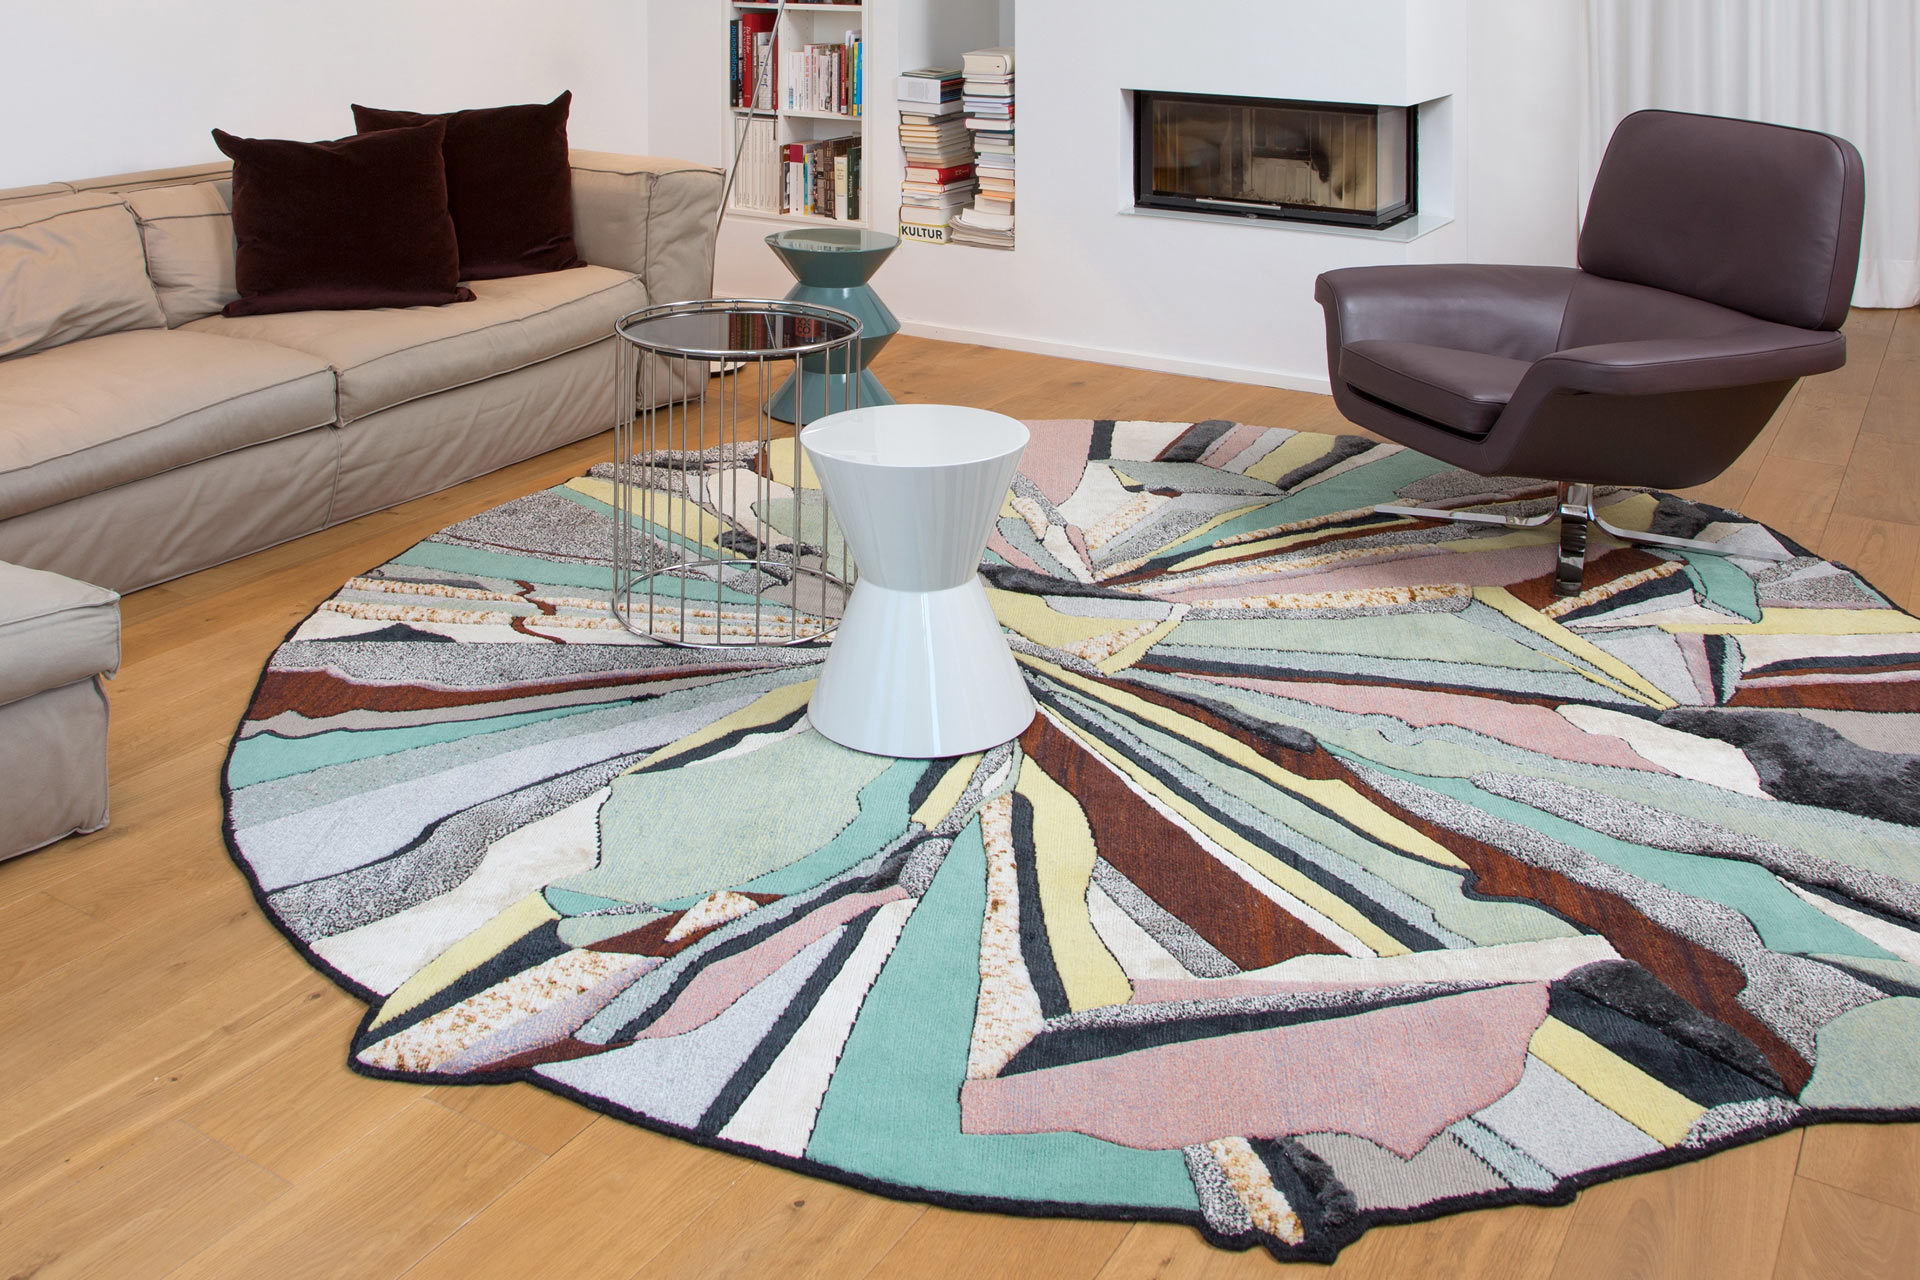 Der handgefertigte Teppich von cc-tapis bildet das Zentrum des Wohnraumes dieser Maisonette Wohnung in Köln